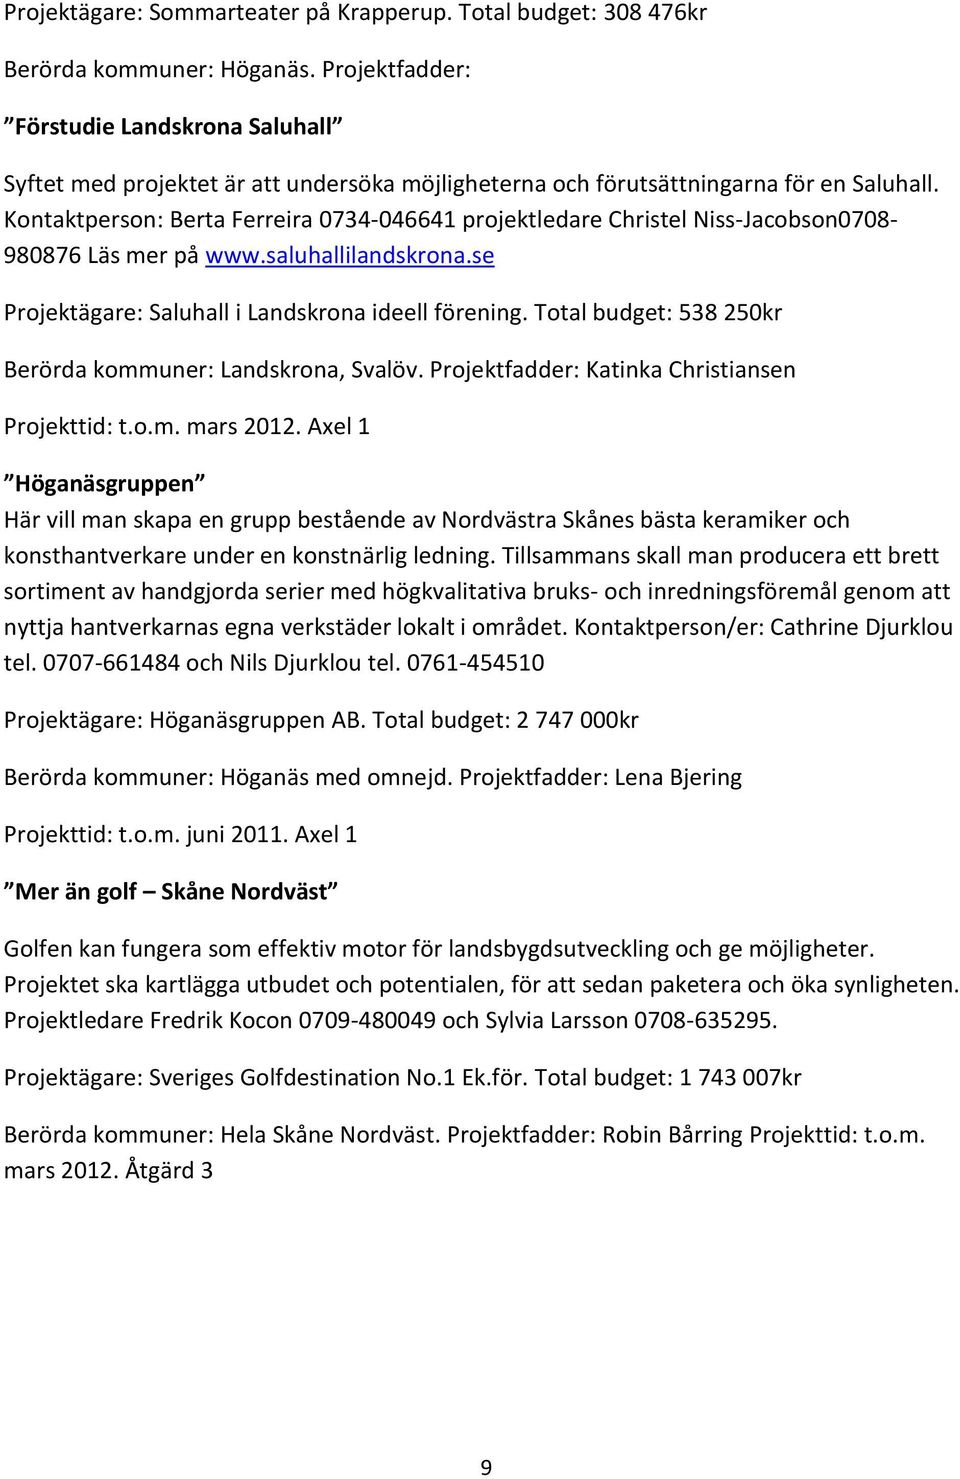 Kontaktperson: Berta Ferreira 0734-046641 projektledare Christel Niss-Jacobson0708-980876 Läs mer på www.saluhallilandskrona.se Projektägare: Saluhall i Landskrona ideell förening.